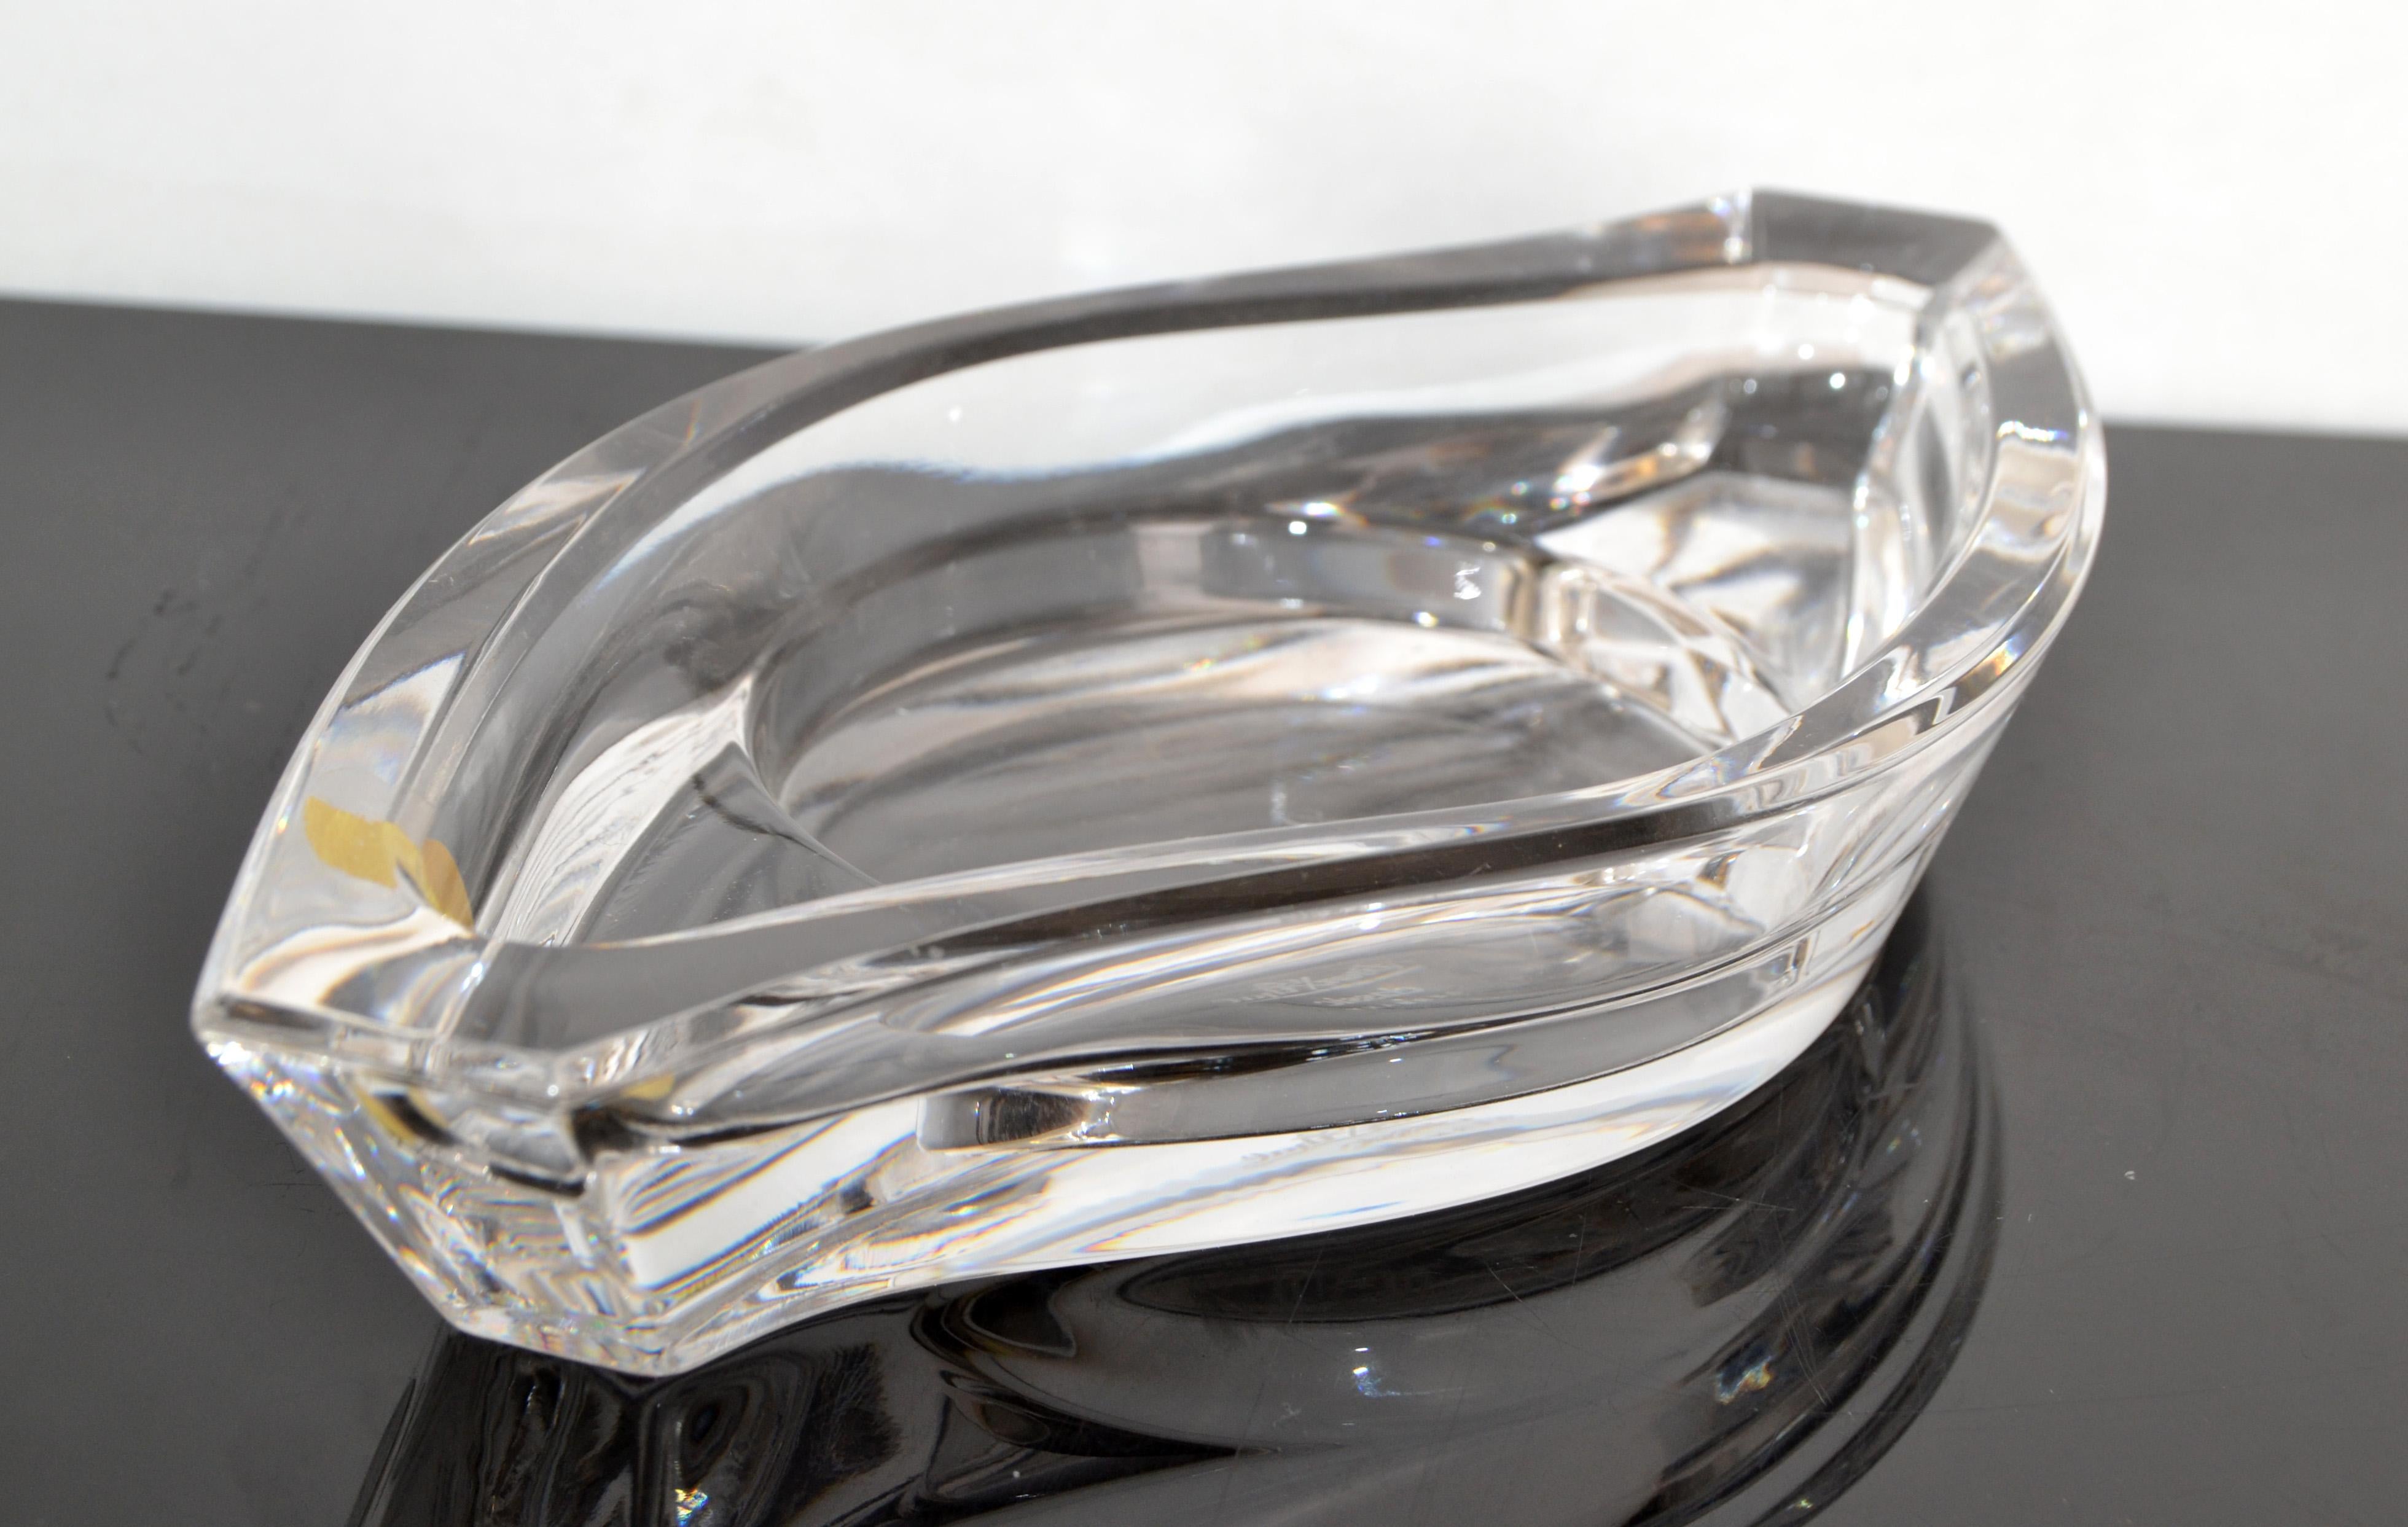 Auffallend original Rosenthal Space Age Bleikristall Glas Horizont Säule Kerzenhalter, vide poche, catchall, Schale aus Deutschland. 
Für mich sieht es aus wie die Form eines Auges und sieht auf einer schwarzen Kredenz, einem Flurtisch oder einem